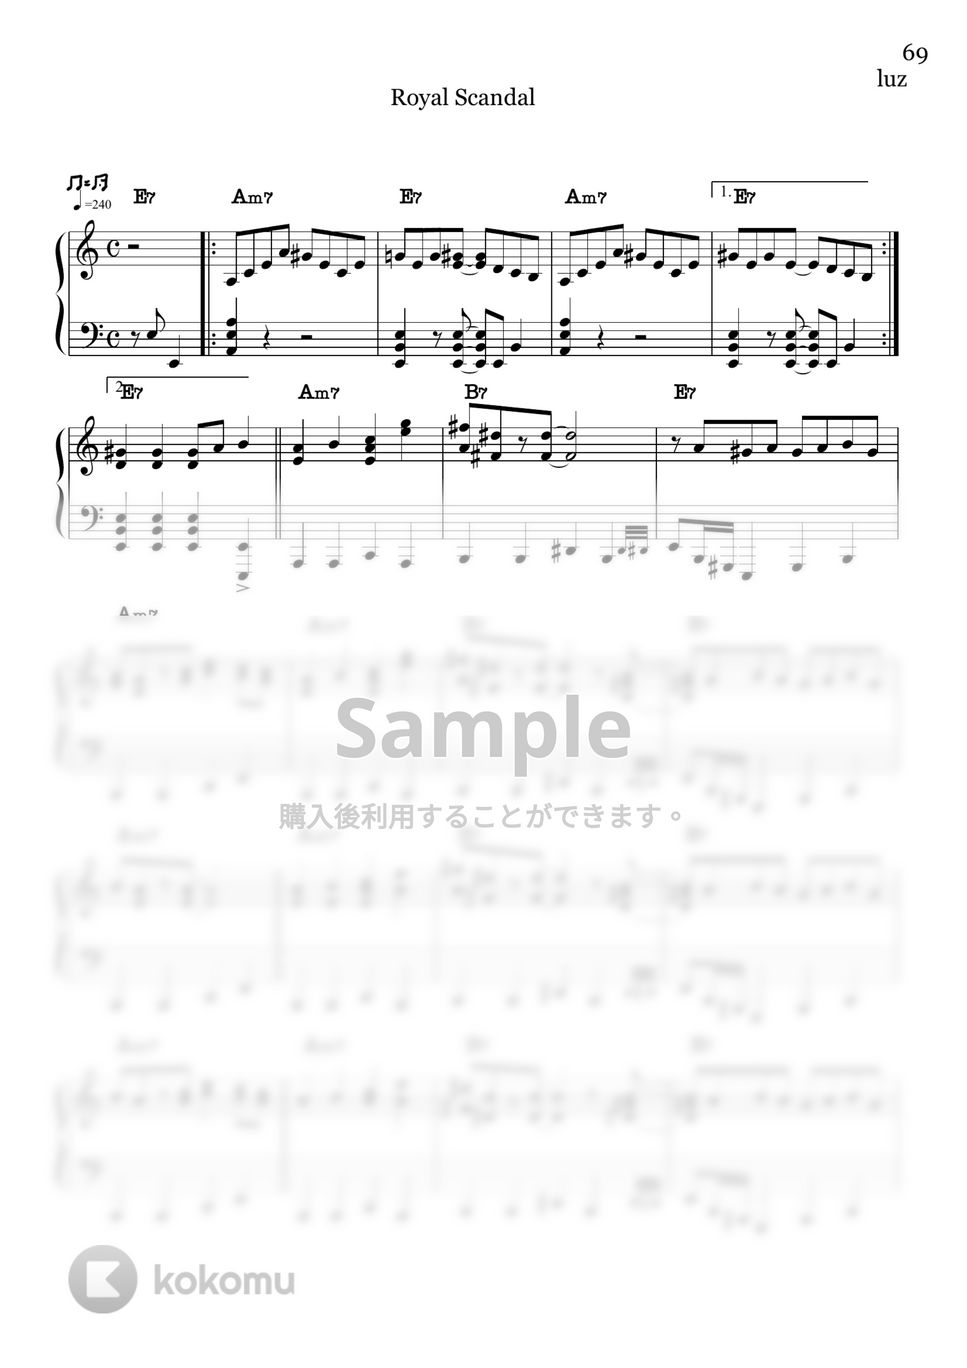 奏音69 - チェリーハント - 奏音69 (ピアノソロ/コード有/奏音69/luz/royyalscandal) by CAFUNE-かふね-